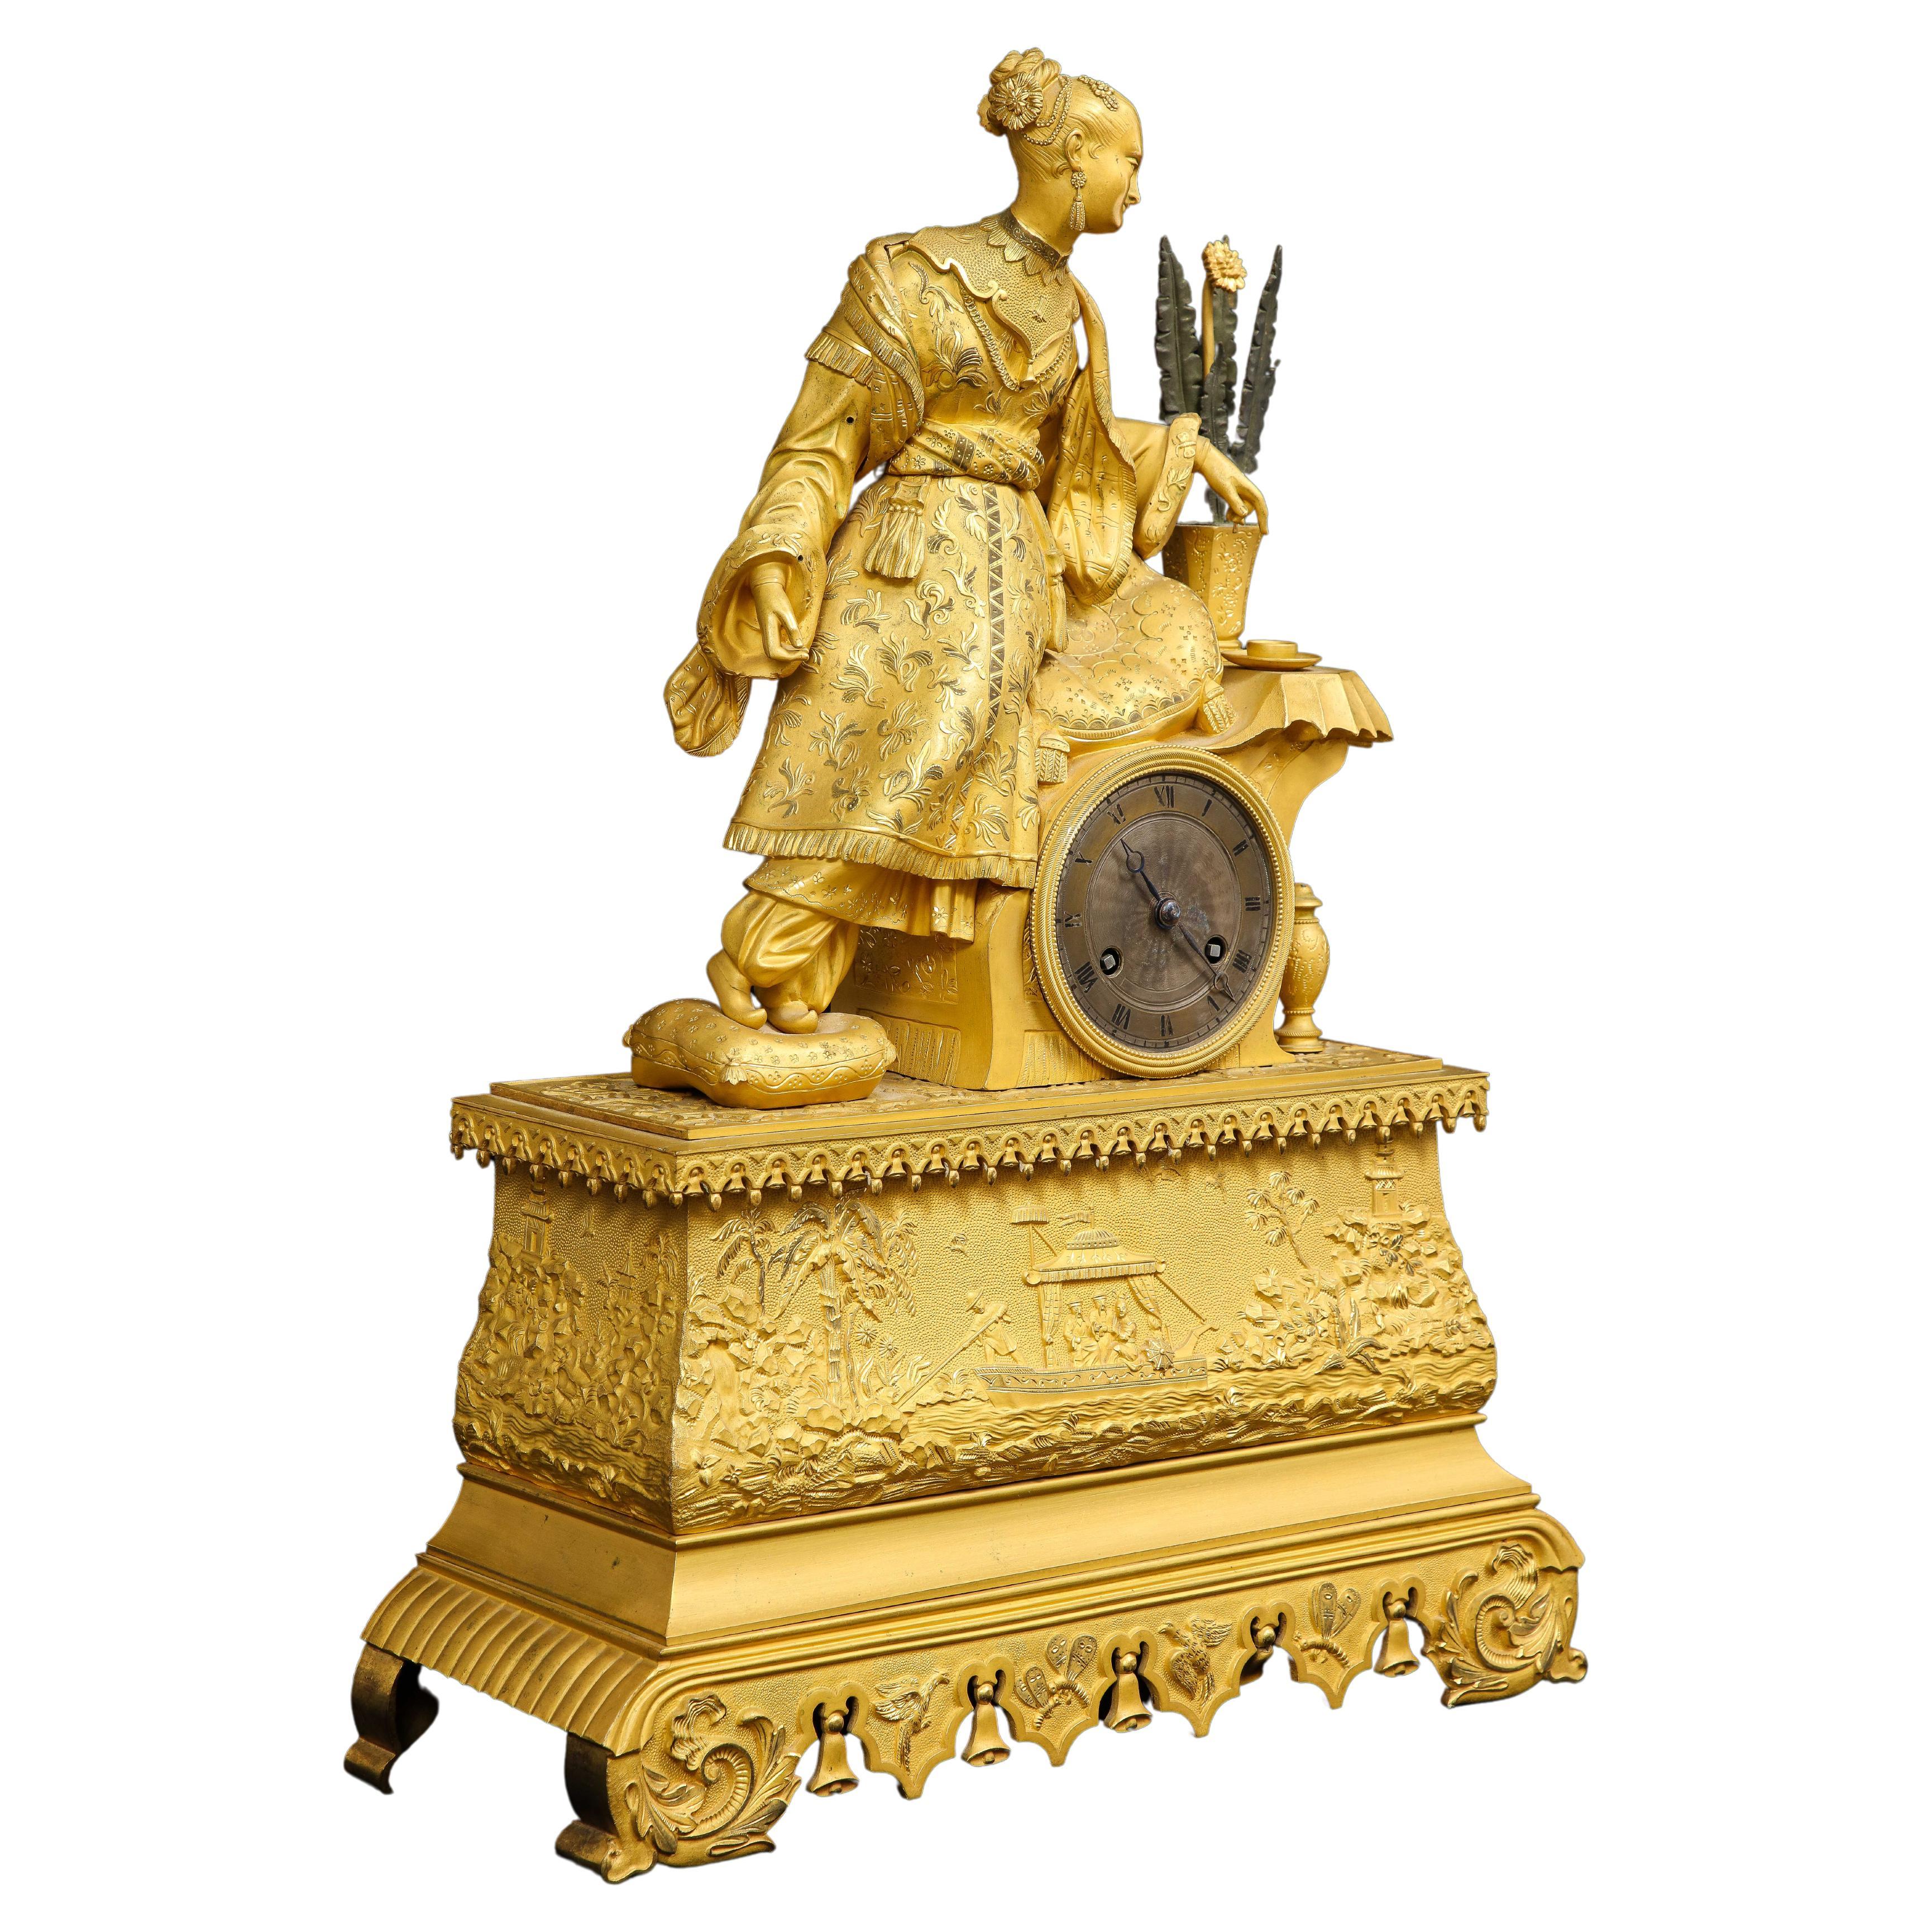 Eine französische Dore-Bronze-Uhr im Chinoiserie-Stil des 19. Jahrhunderts mit einer auf einem Sitz ruhenden Frau. Dies ist ein wunderschönes Beispiel französischer Dore-Bronze-Handwerkskunst gemischt mit dem Chinoiserie-Stil. Die Uhr zeigt eine